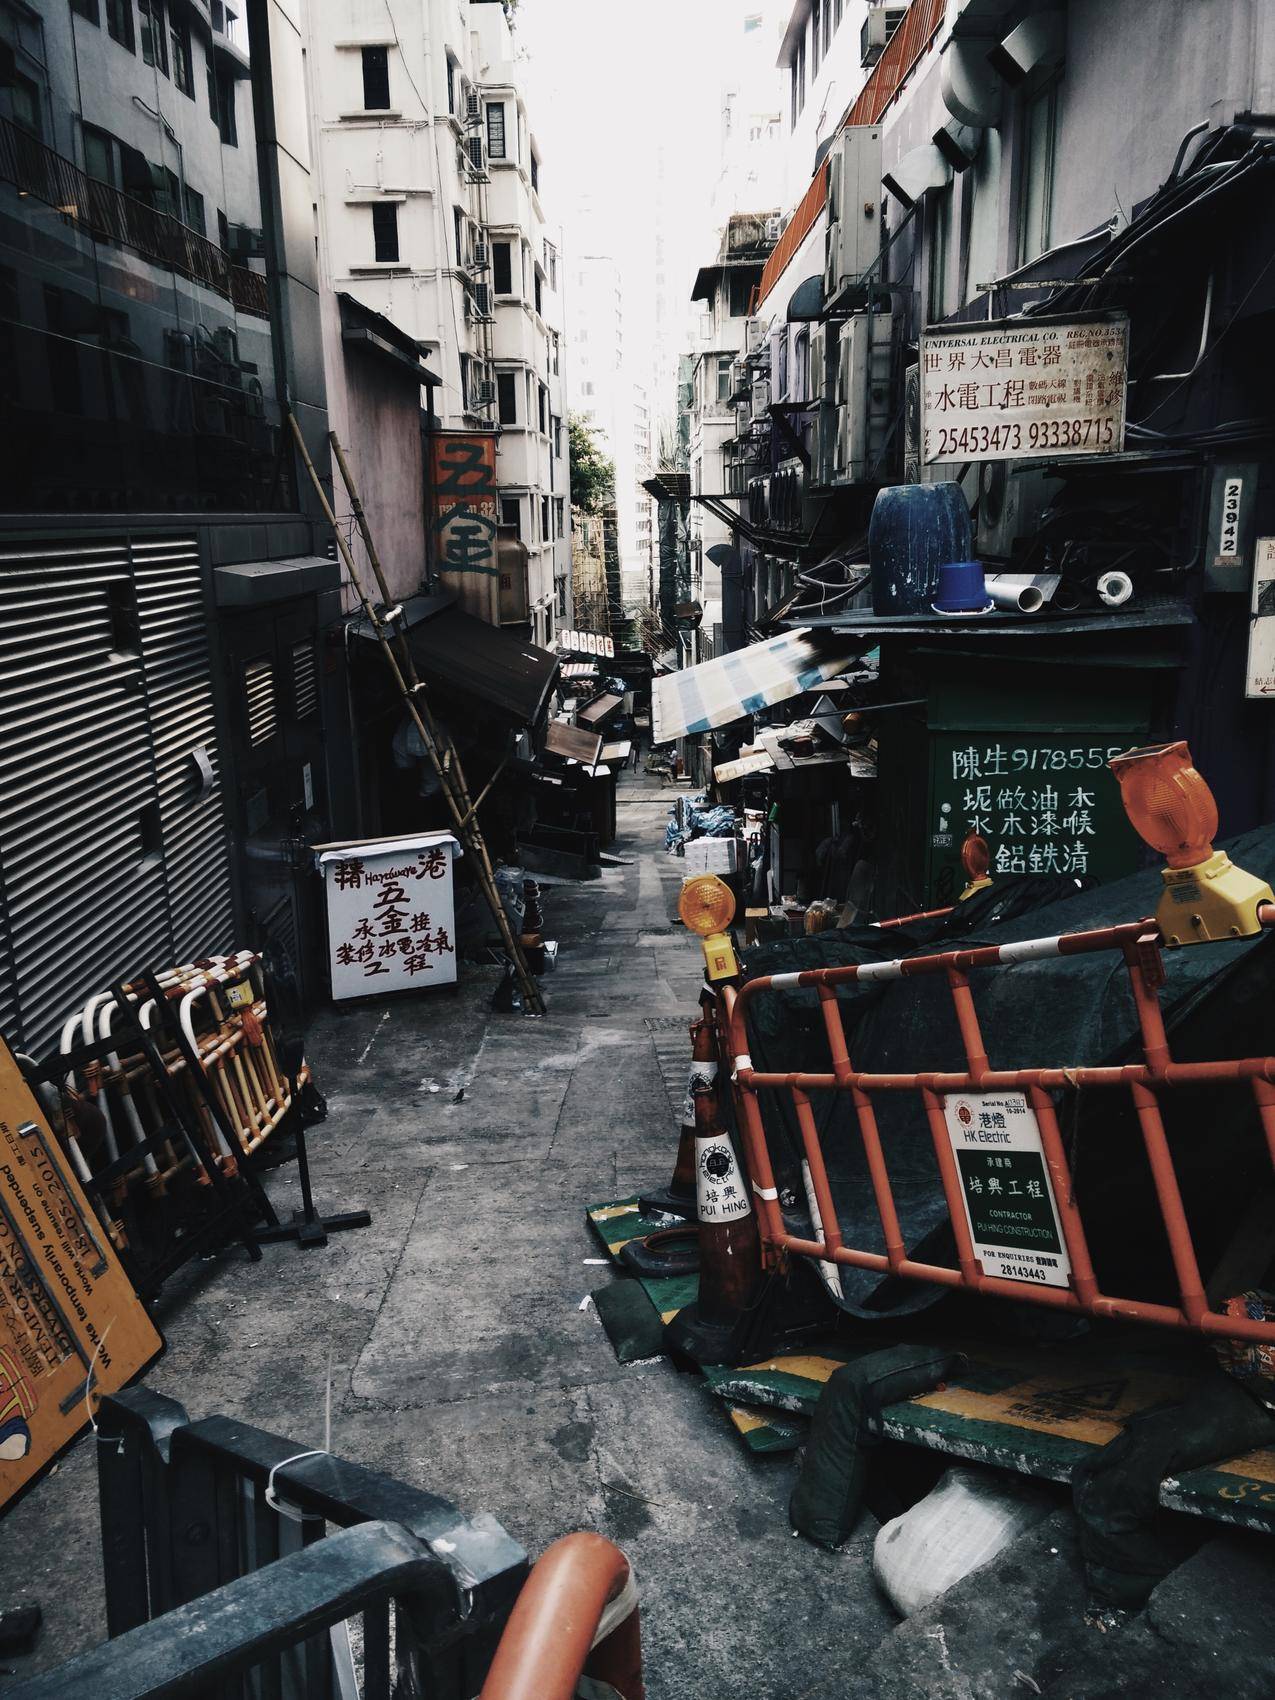 极少主义,建筑工地,小巷,中国,香港